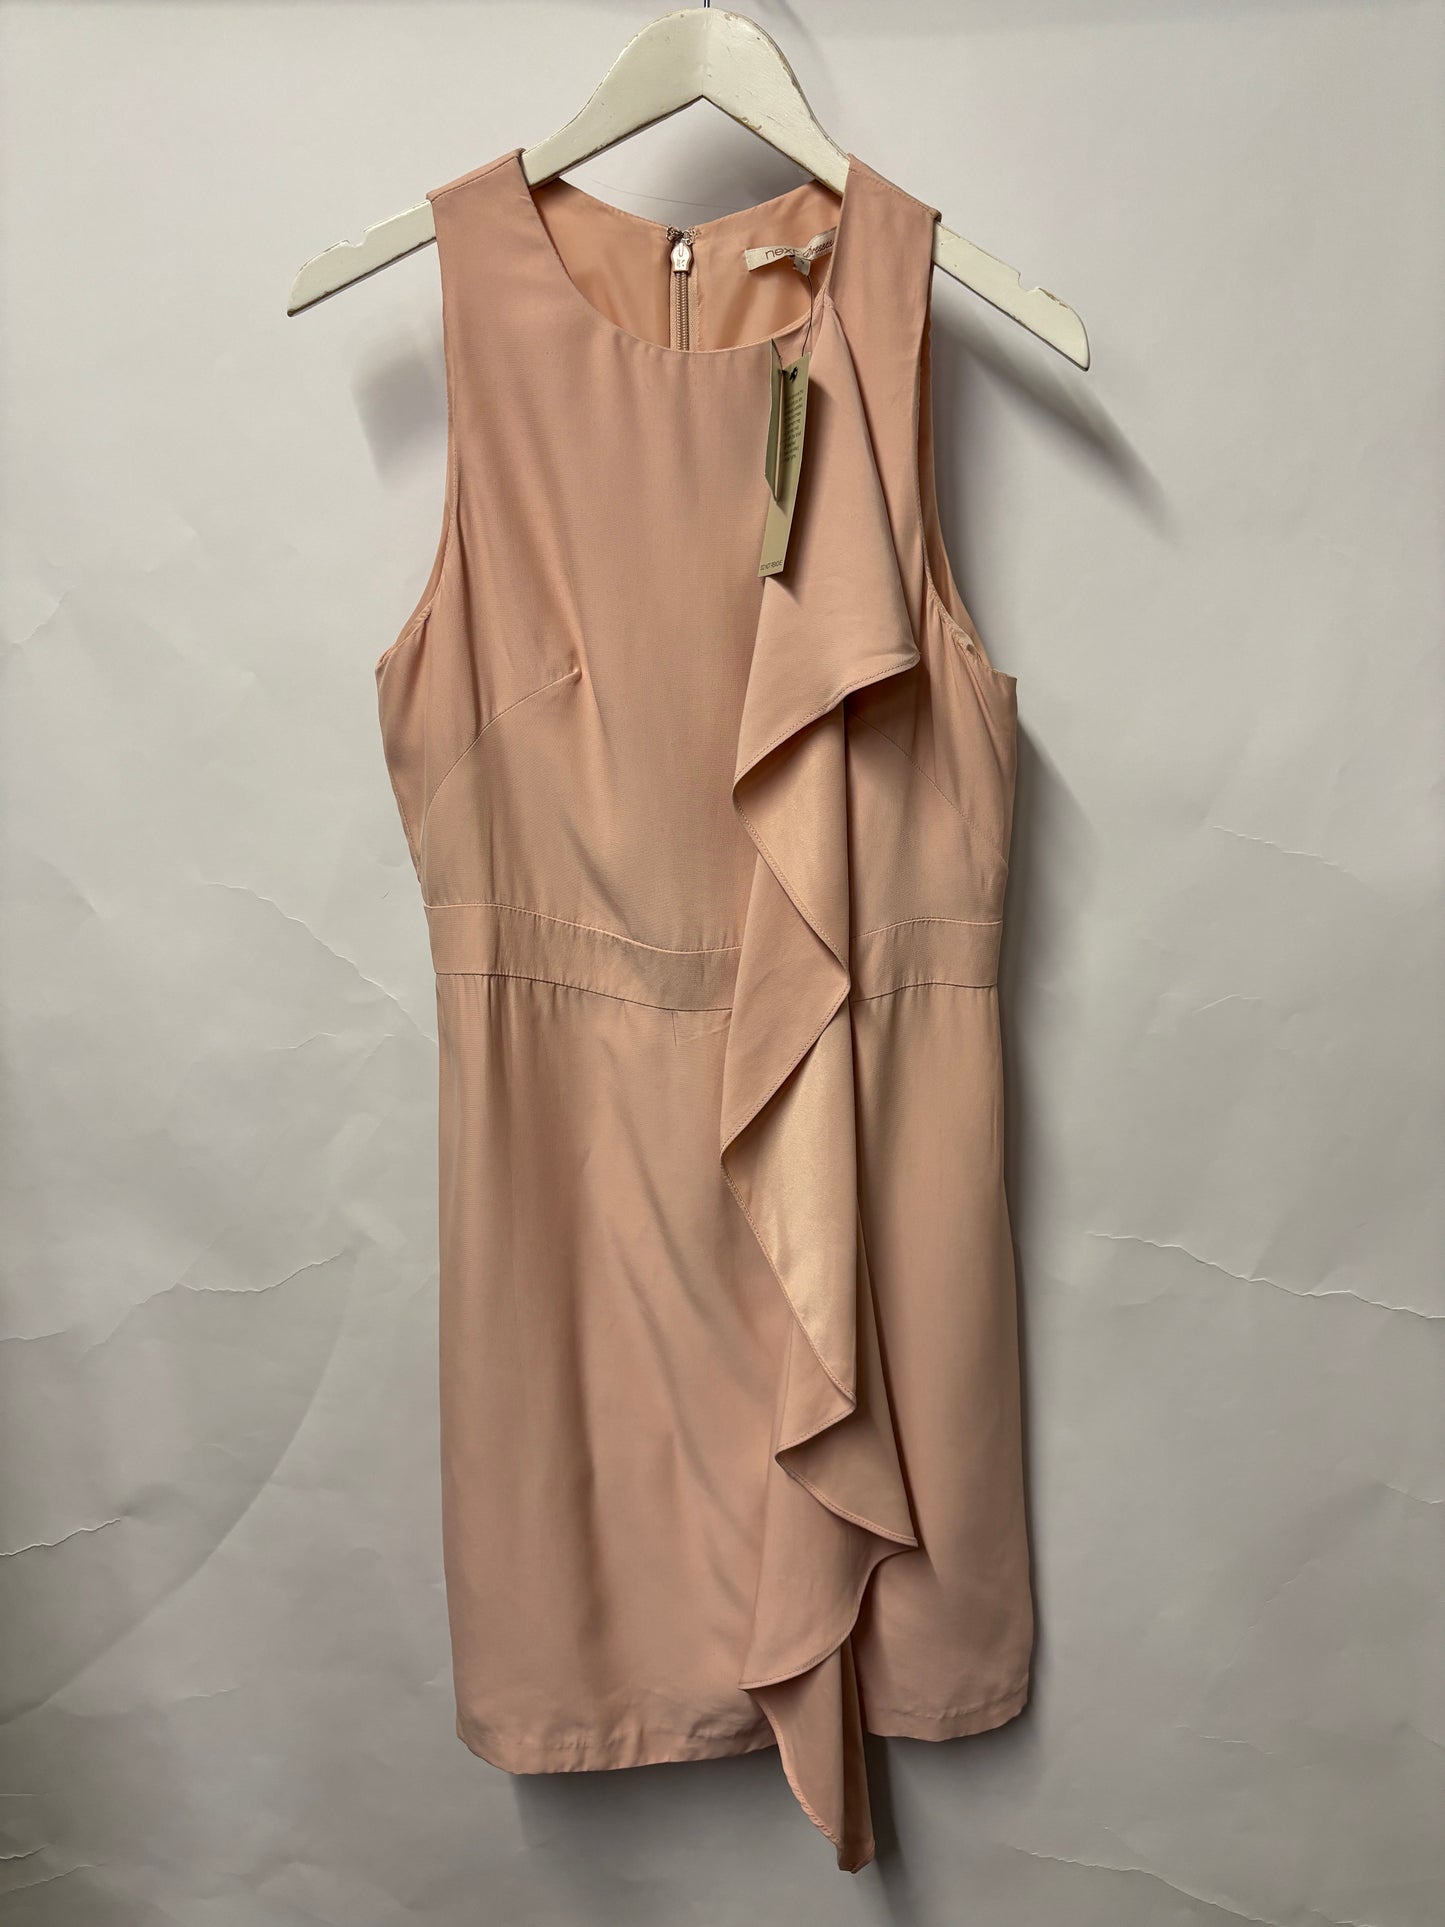 Next Pale Pink Sleeveless Ruffle Dress 12 BNWT